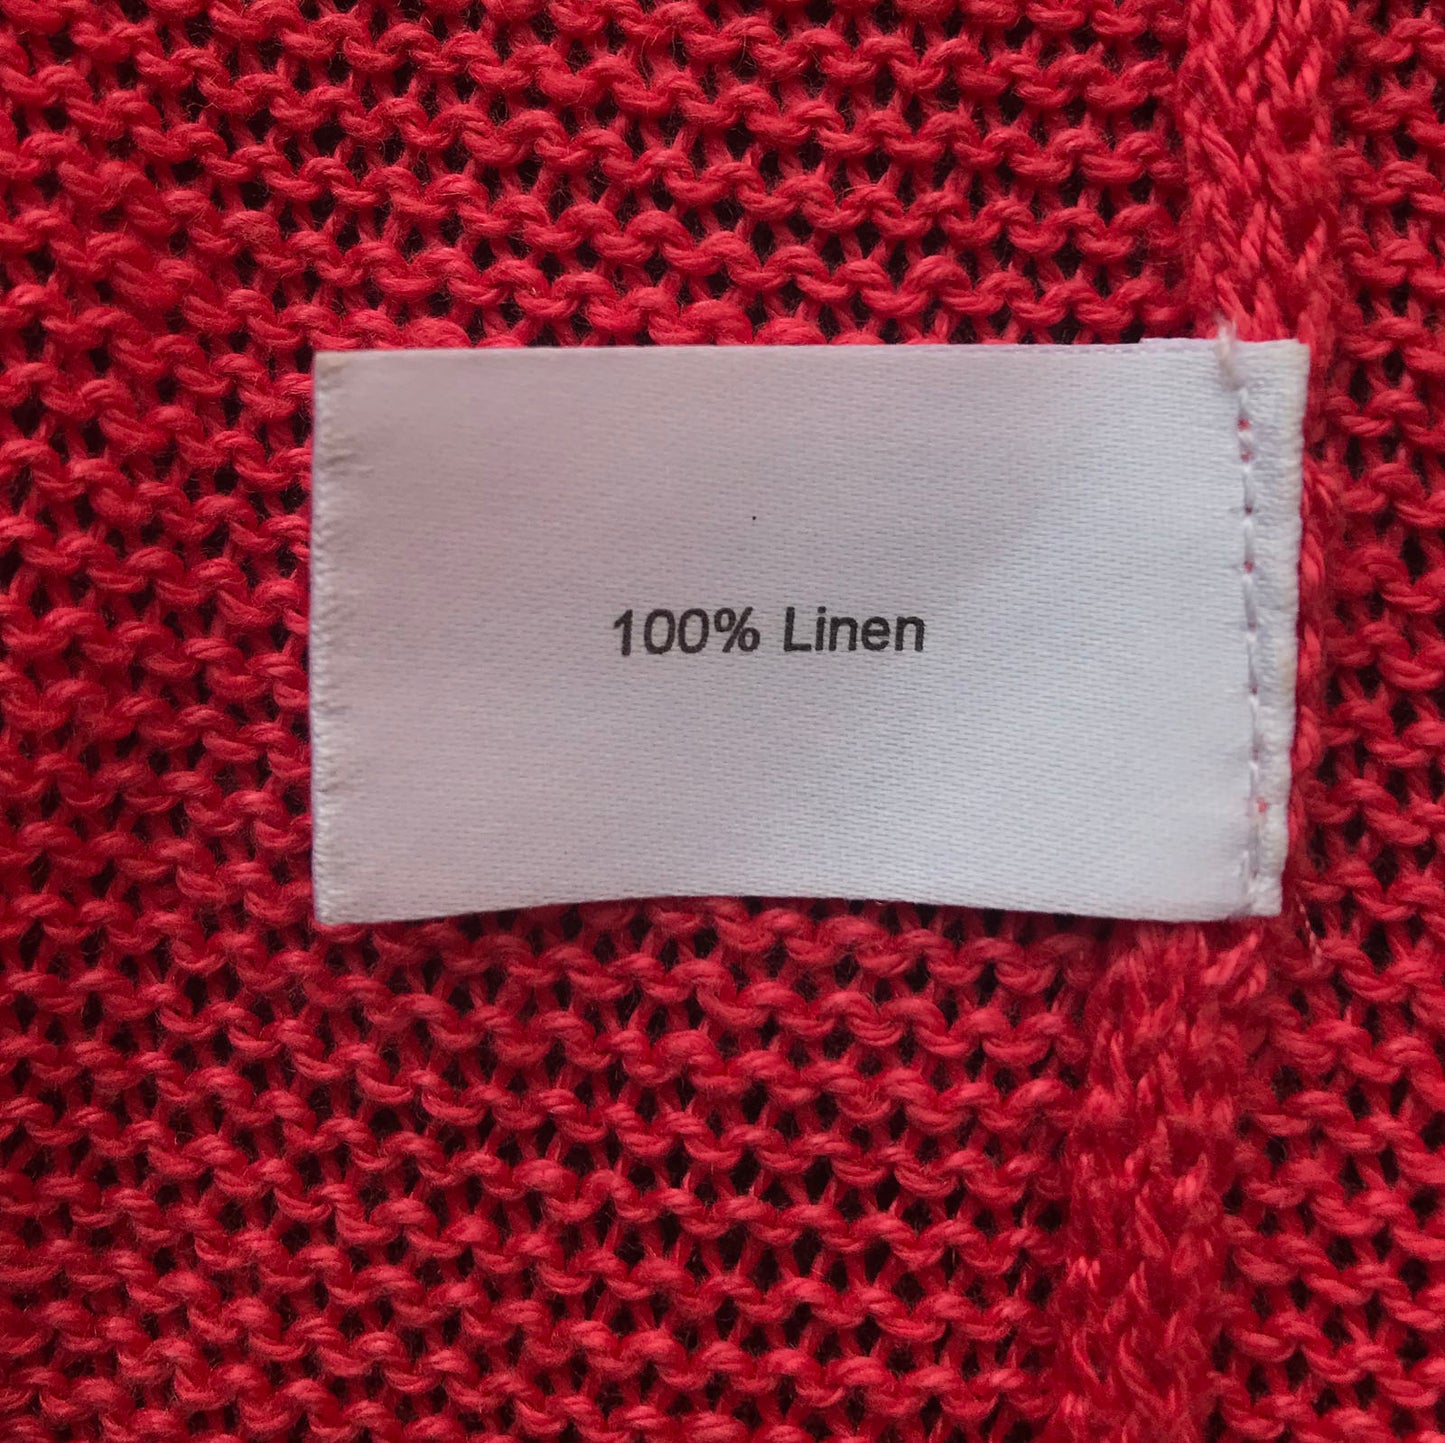 RECYCLED 100% Linen Yarn - Maraschino Cherry Red